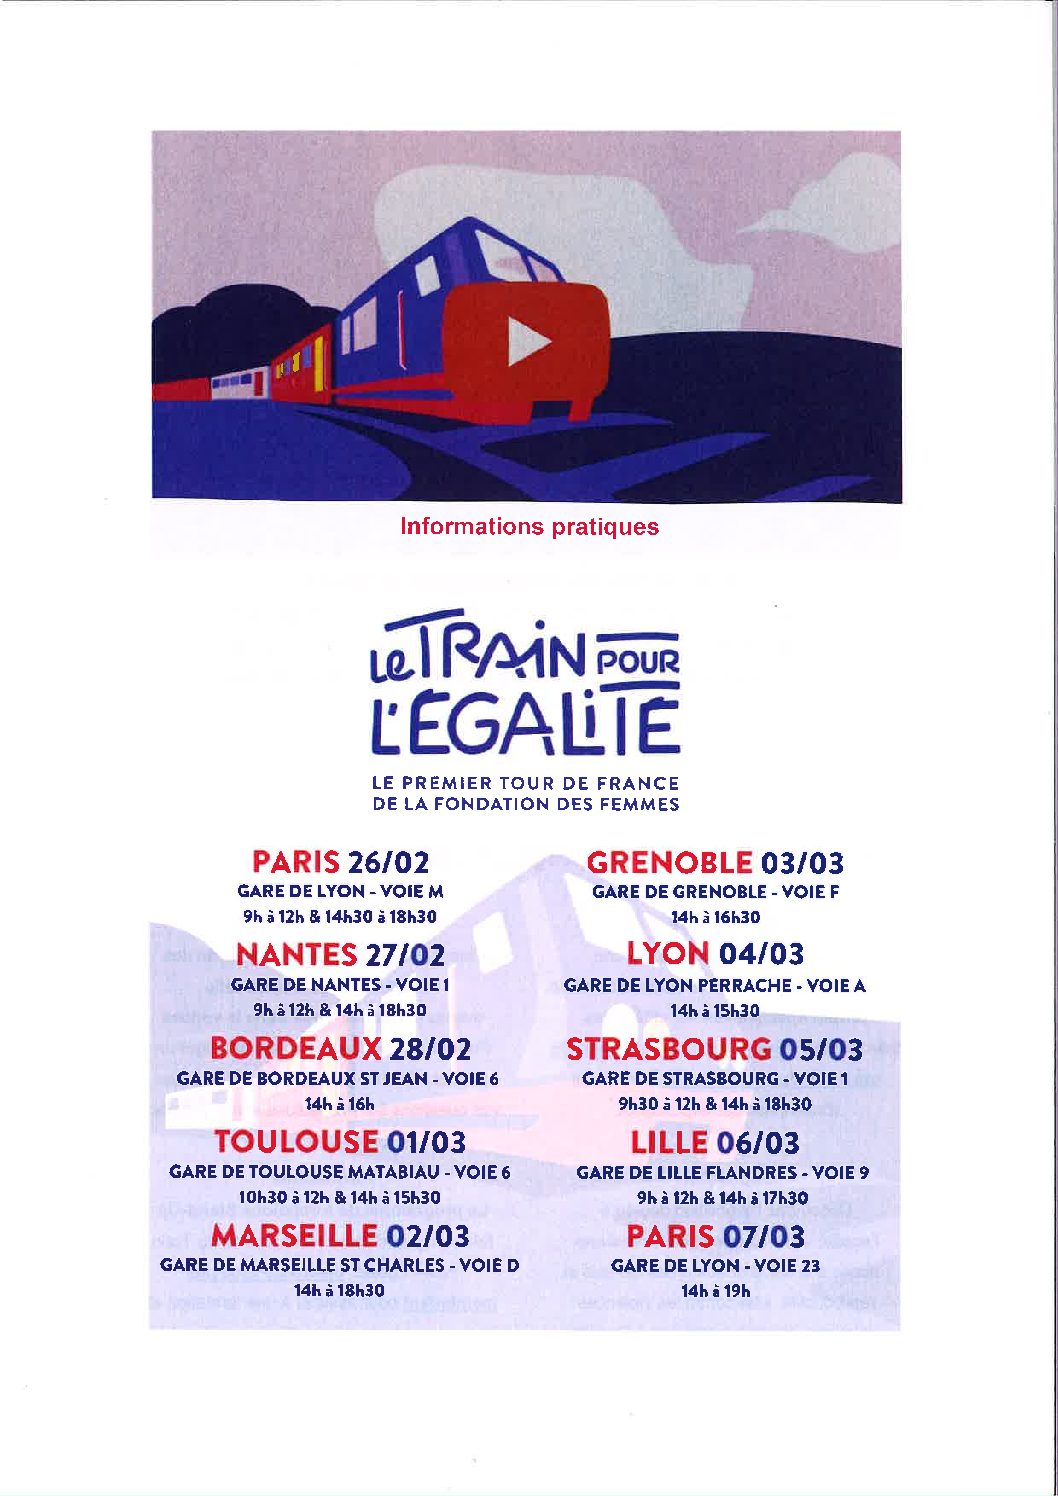 26 février et 7 mars 2022 : Le train pour l’égalité – Gare de Lyon à Paris